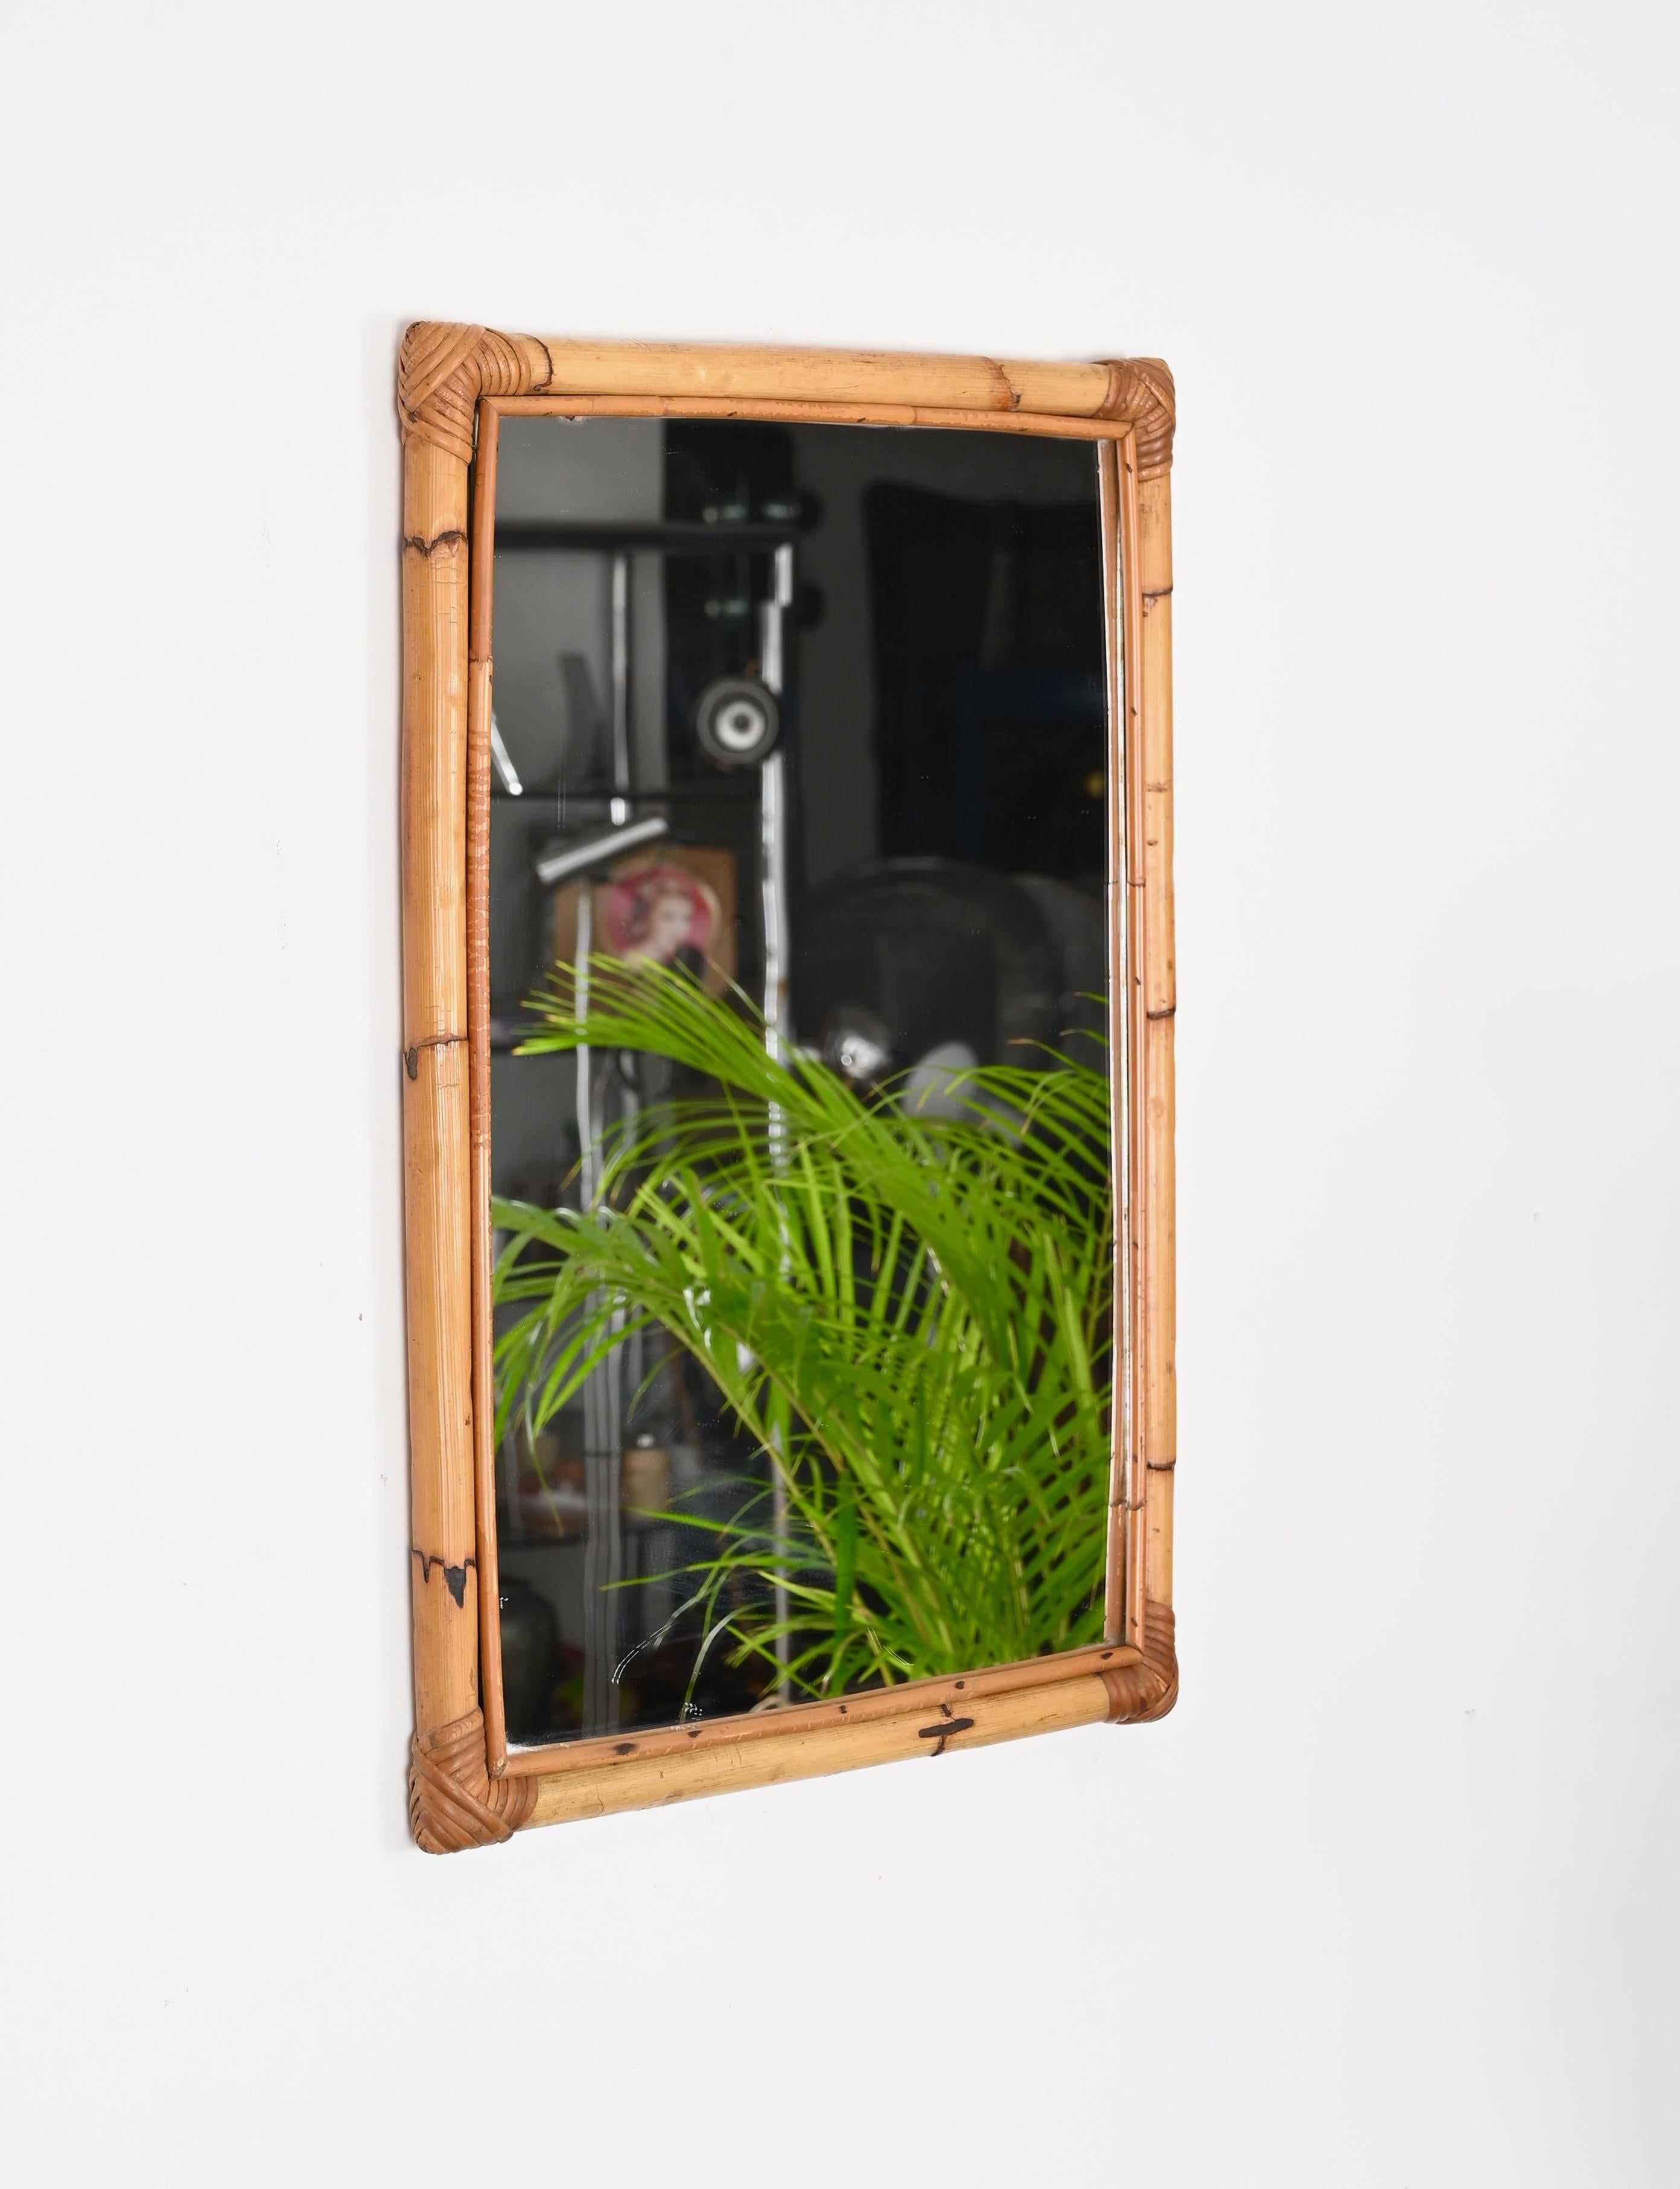 Schöner rechteckiger Spiegel im französischen Riviera-Stil der Jahrhundertmitte aus Bambus und handgeflochtenem Rattangeflecht. Dieser prächtige Spiegel wurde in den 1970er Jahren in Italien hergestellt.

Dieser Spiegel  hat einen doppelten Rahmen